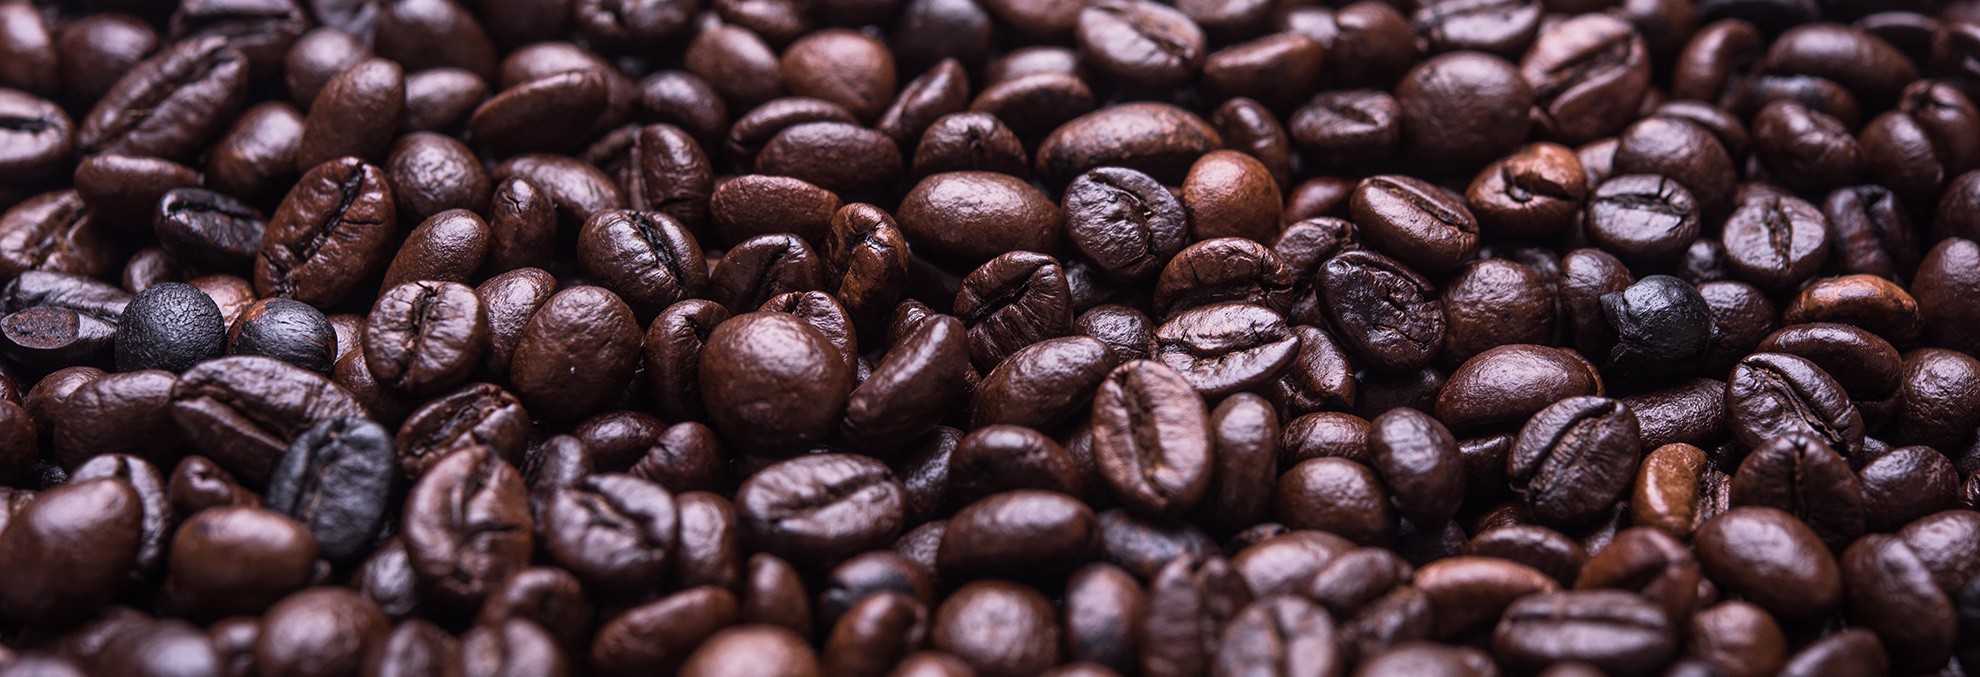 Barone Coffee Company Coffee beans